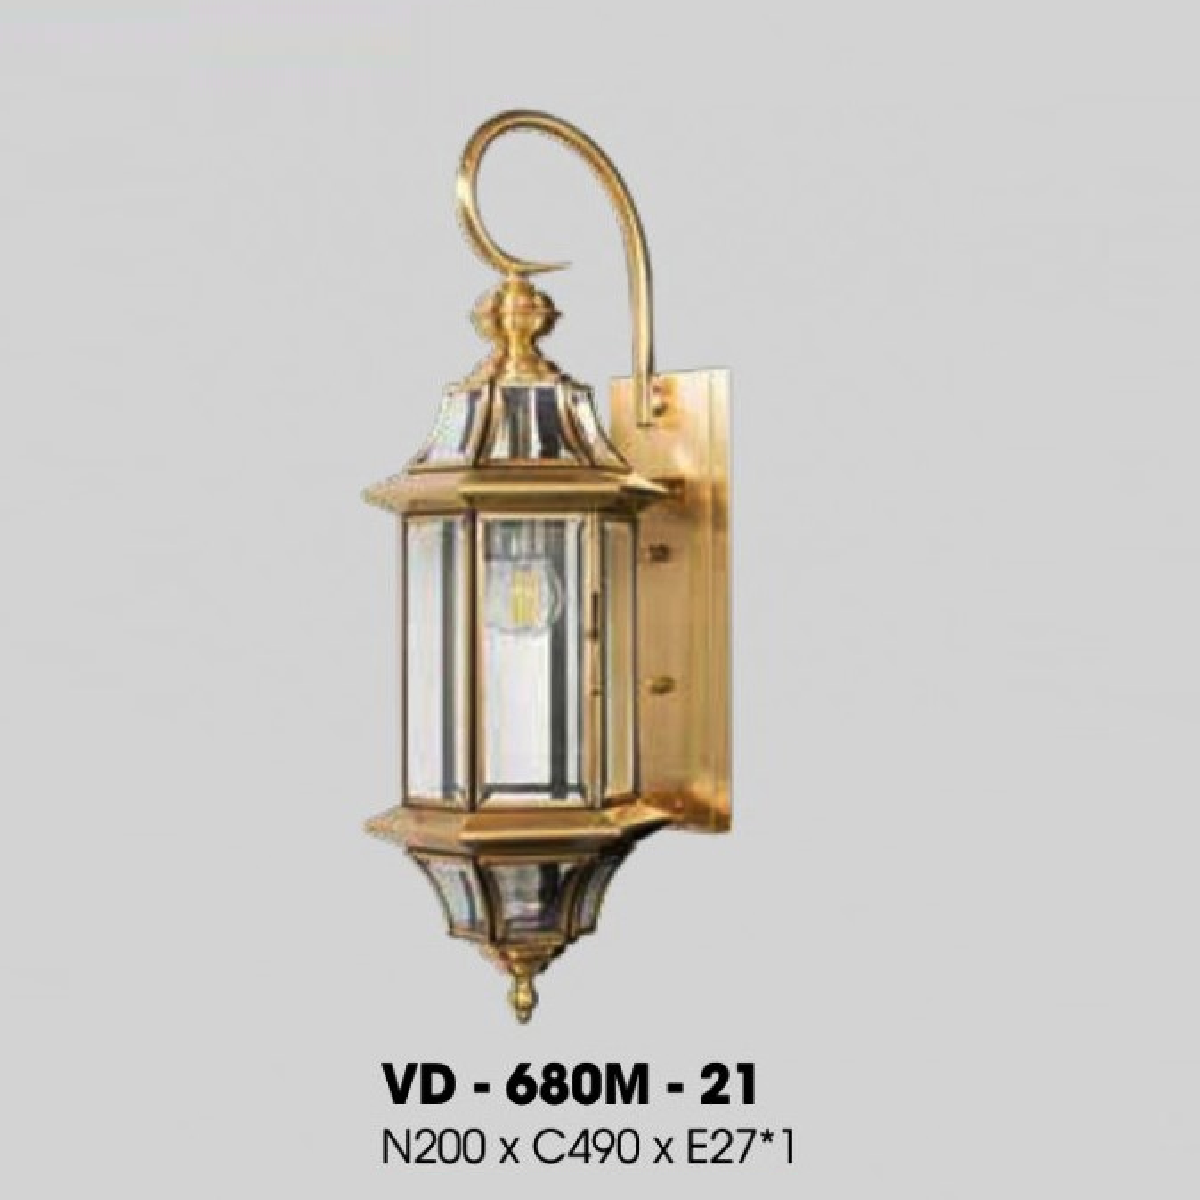 VD-680M-21: Đèn vách ngoài xi mạ đồng - KT: W200mm x H490mm - Bóng đèn E27 x 1 bóng